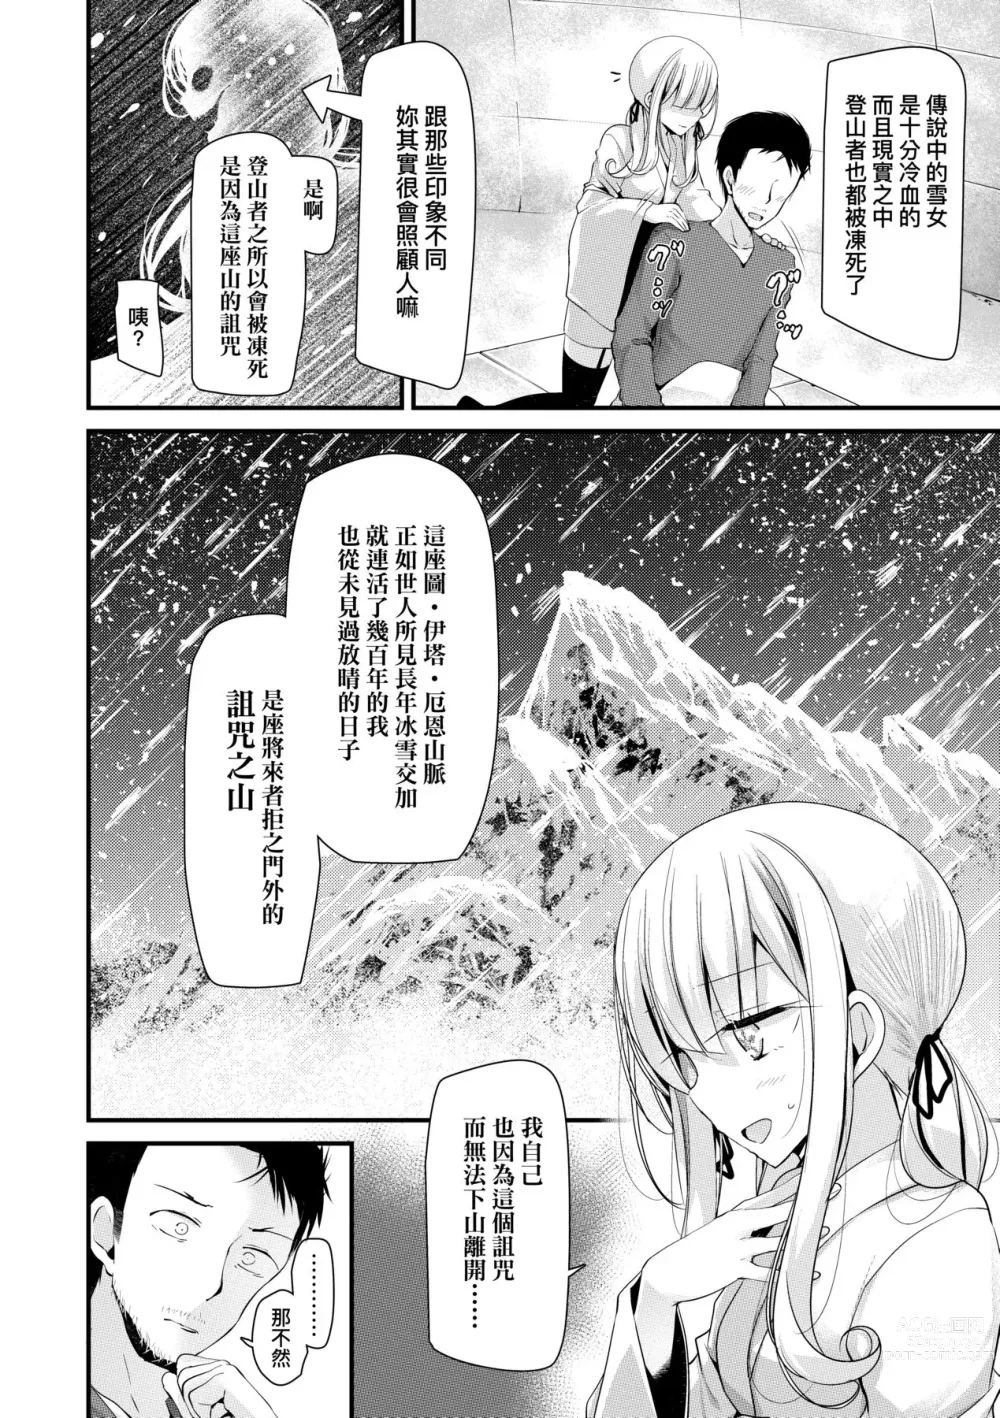 Page 13 of manga 年上的少女你也很喜歡吧? (decensored)